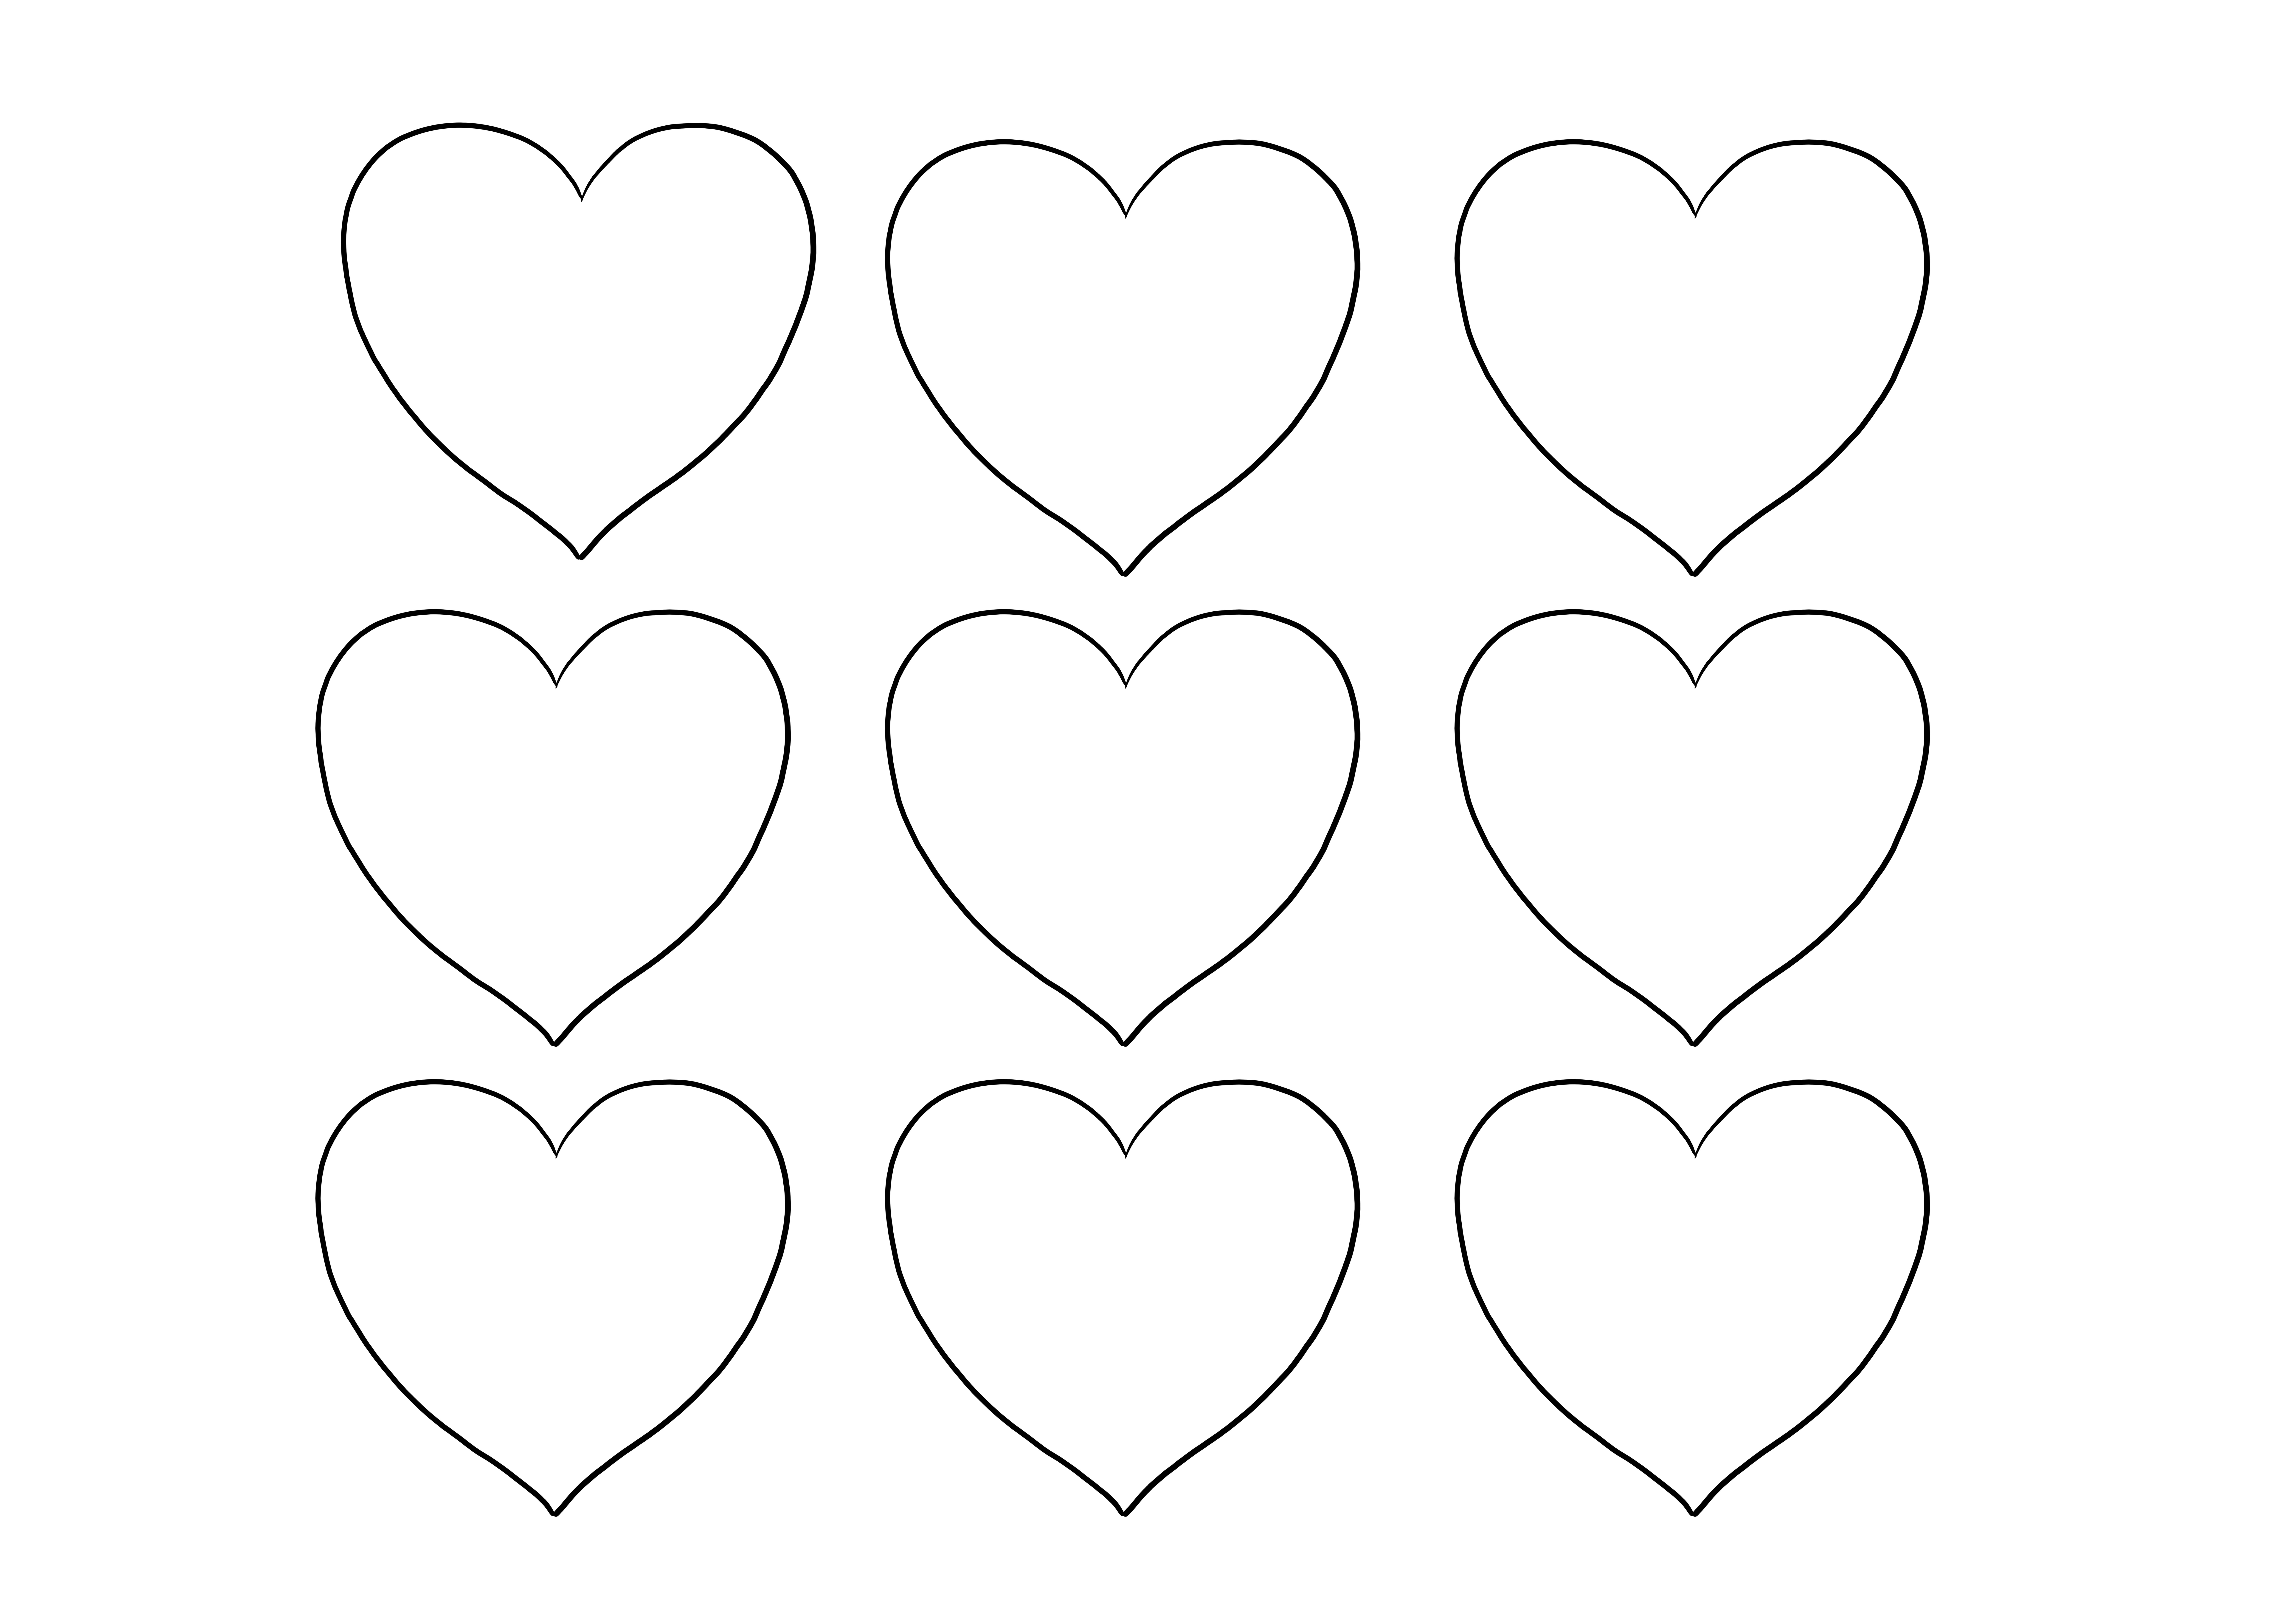 Coloração fácil de corações do dia dos namorados para impressão gratuita e criação de projetos